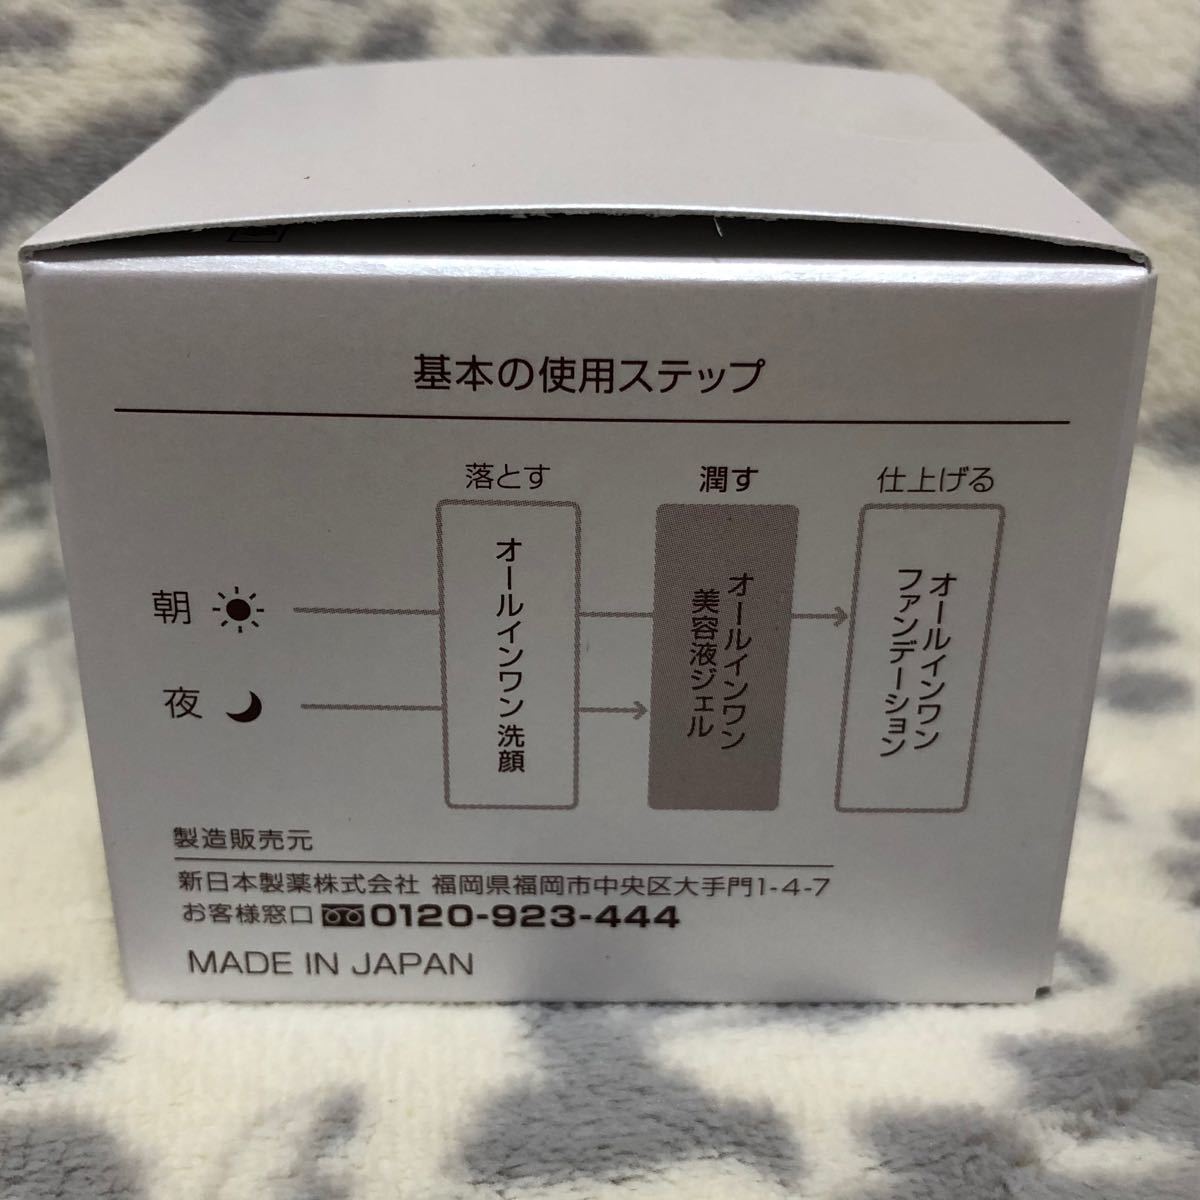 パーフェクトワン モイスチャージェル 75g 2個セット / 新日本製薬 / オールインワンゲル 乳液 クリーム 美容液 